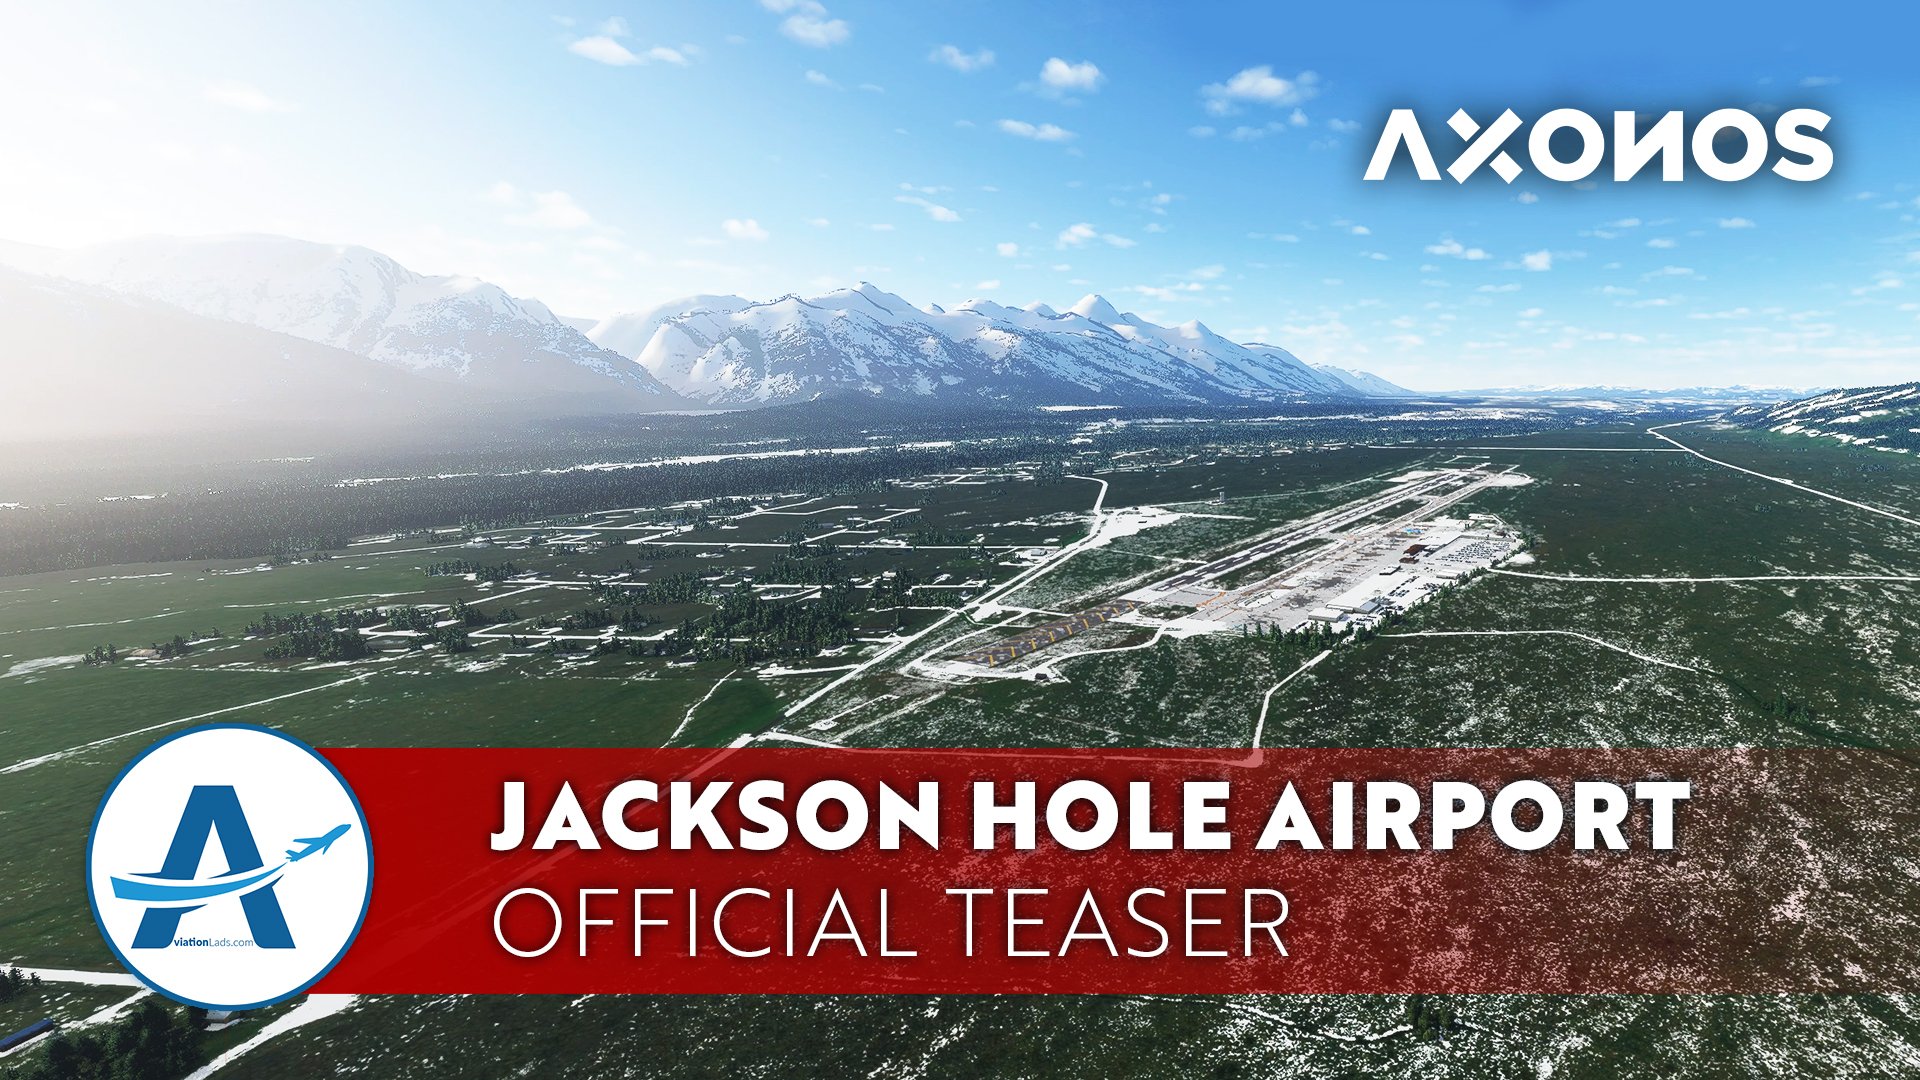 [TEASER] Axonos – Jackson Hole Airport